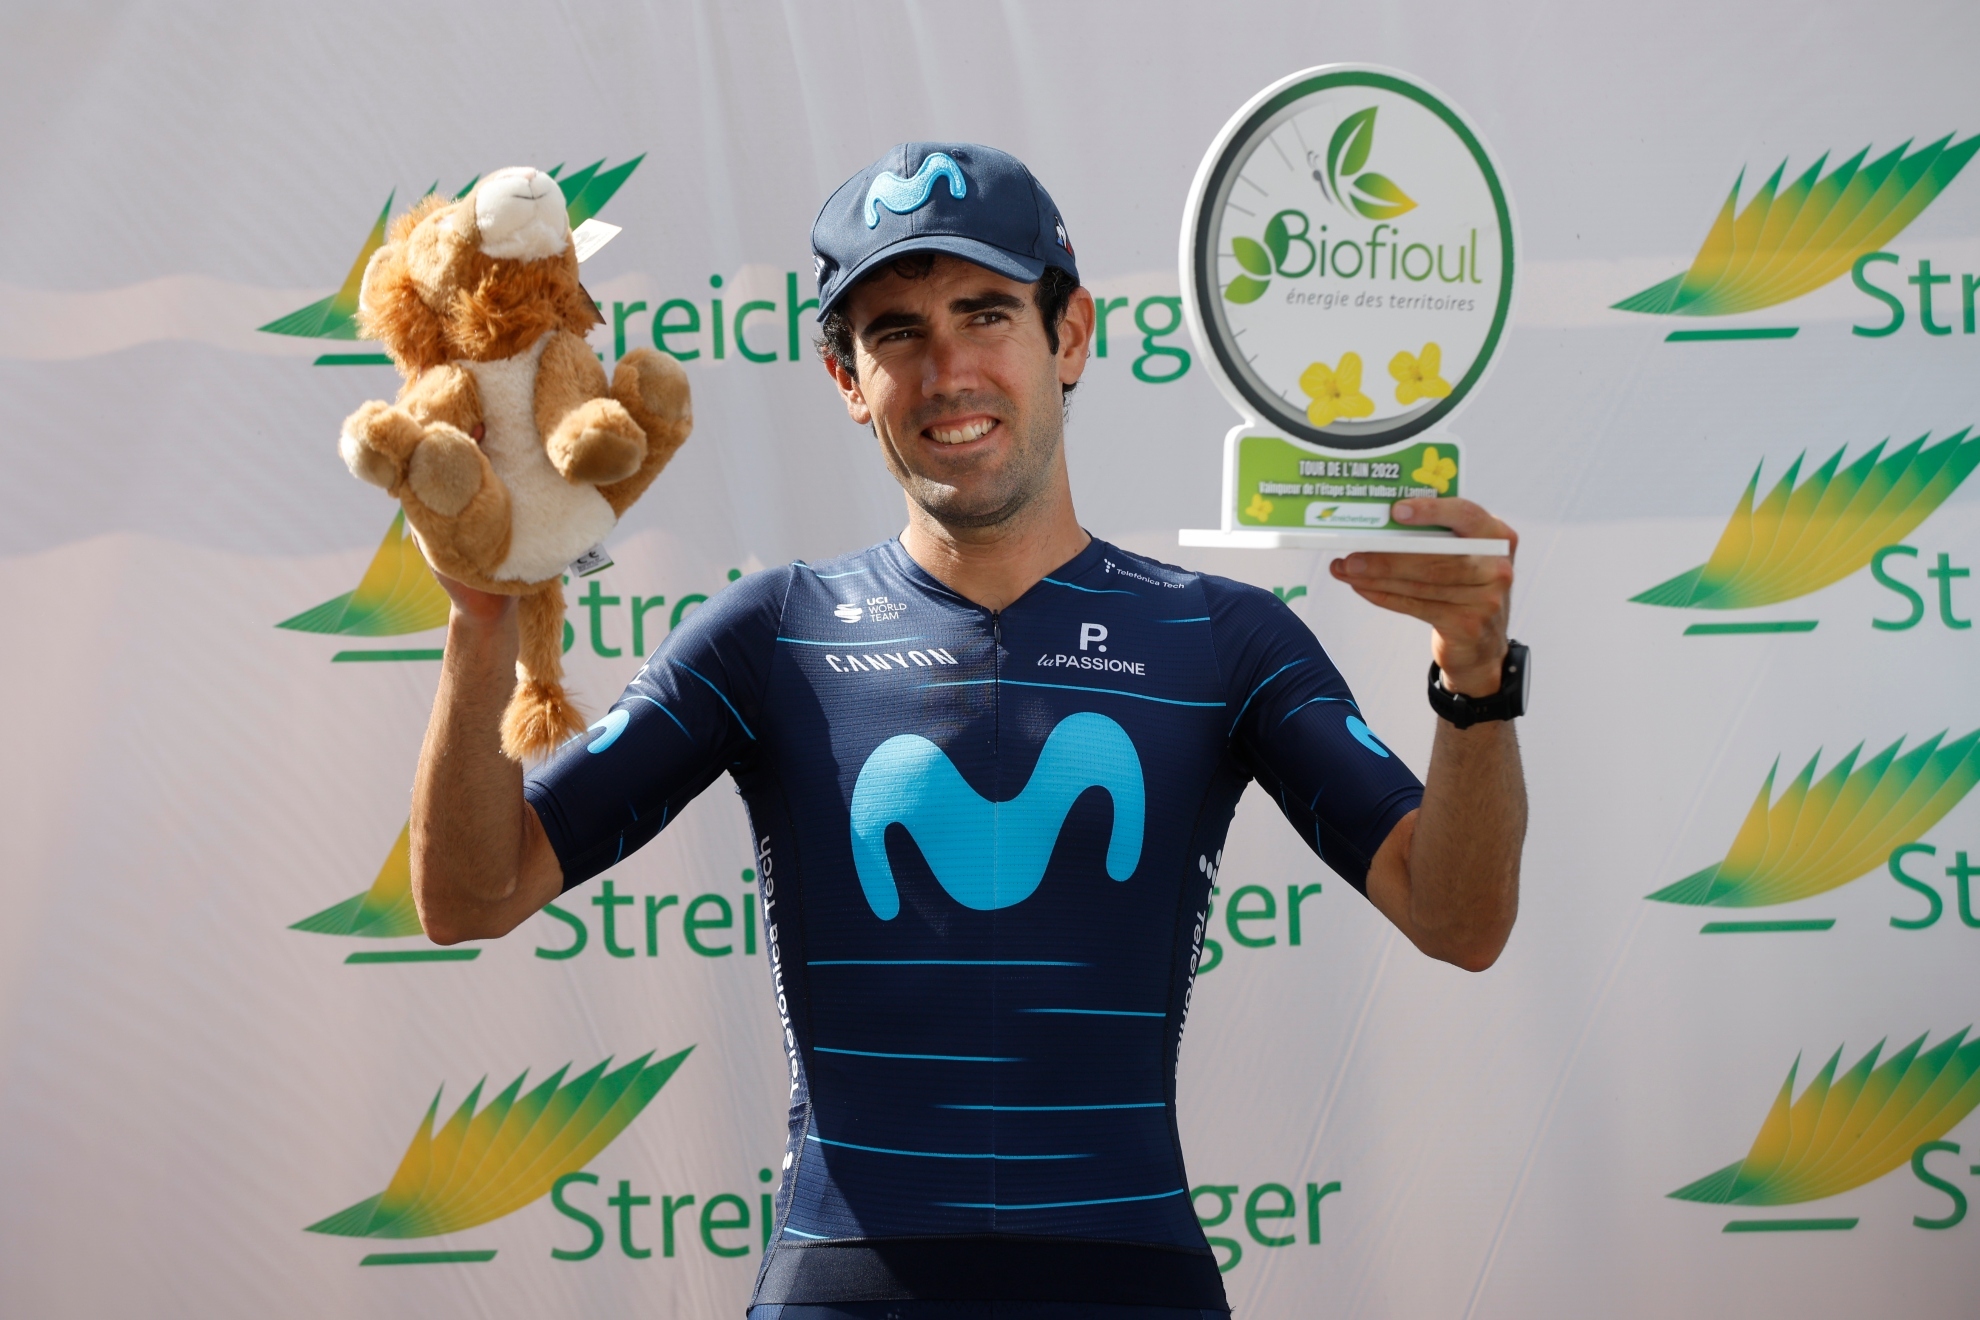 Antonio Pedrero en el podio tras ganar la última etapa del Tour de l'Ain. FOTO: GETTY IMAGES